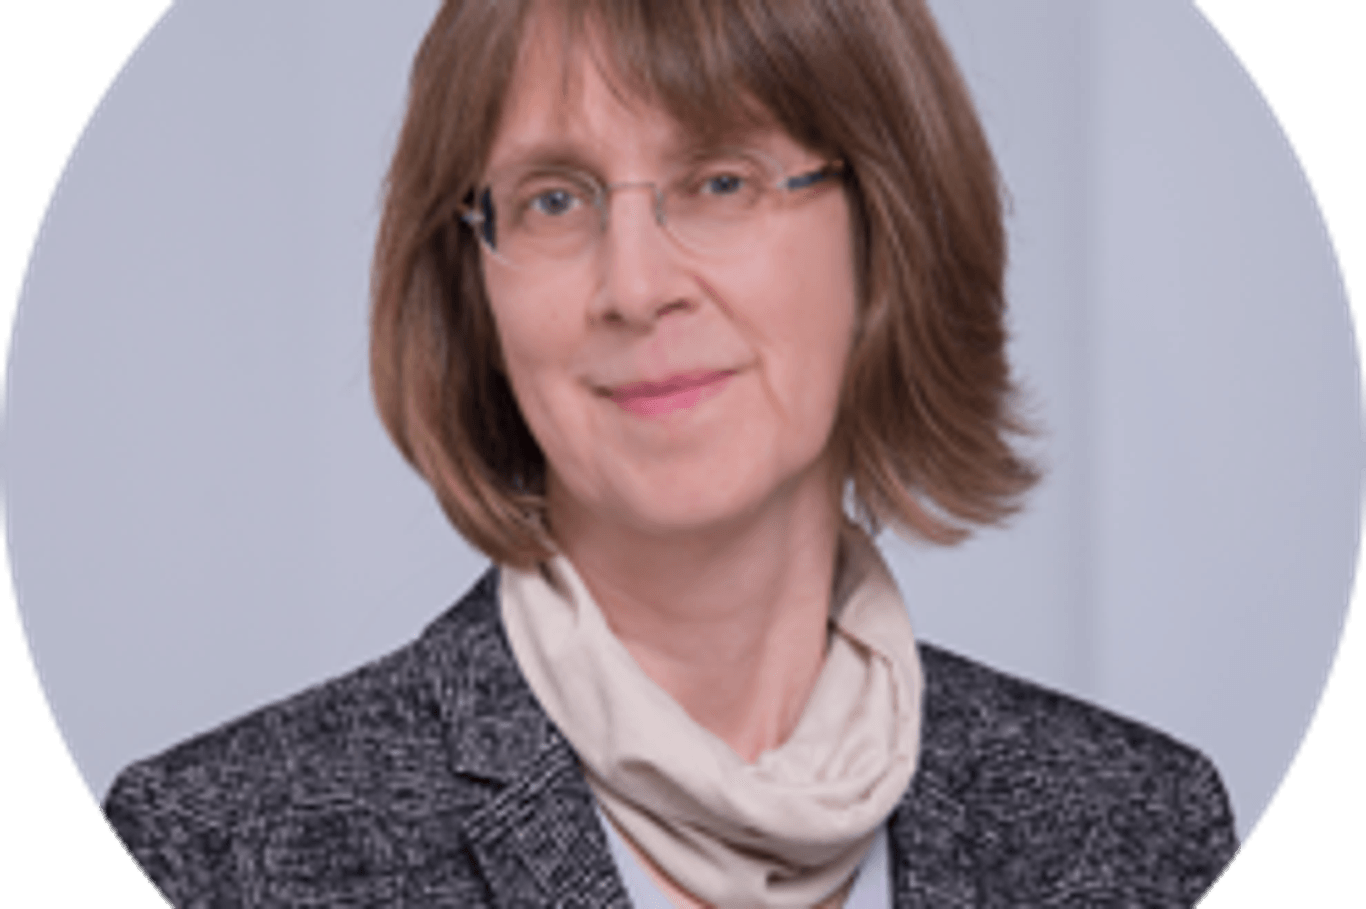 Dr. Susanne Weg-Remers ist Leiterin des Krebsinformationsdienstes (KID) am Deutschen Krebsforschungszentrum (DKFZ) in Heidelberg. Nach ihrem Abschluss hat sie in der Inneren Medizin sowie in der klinischen und Grundlagenforschung für Krebs gearbeitet.